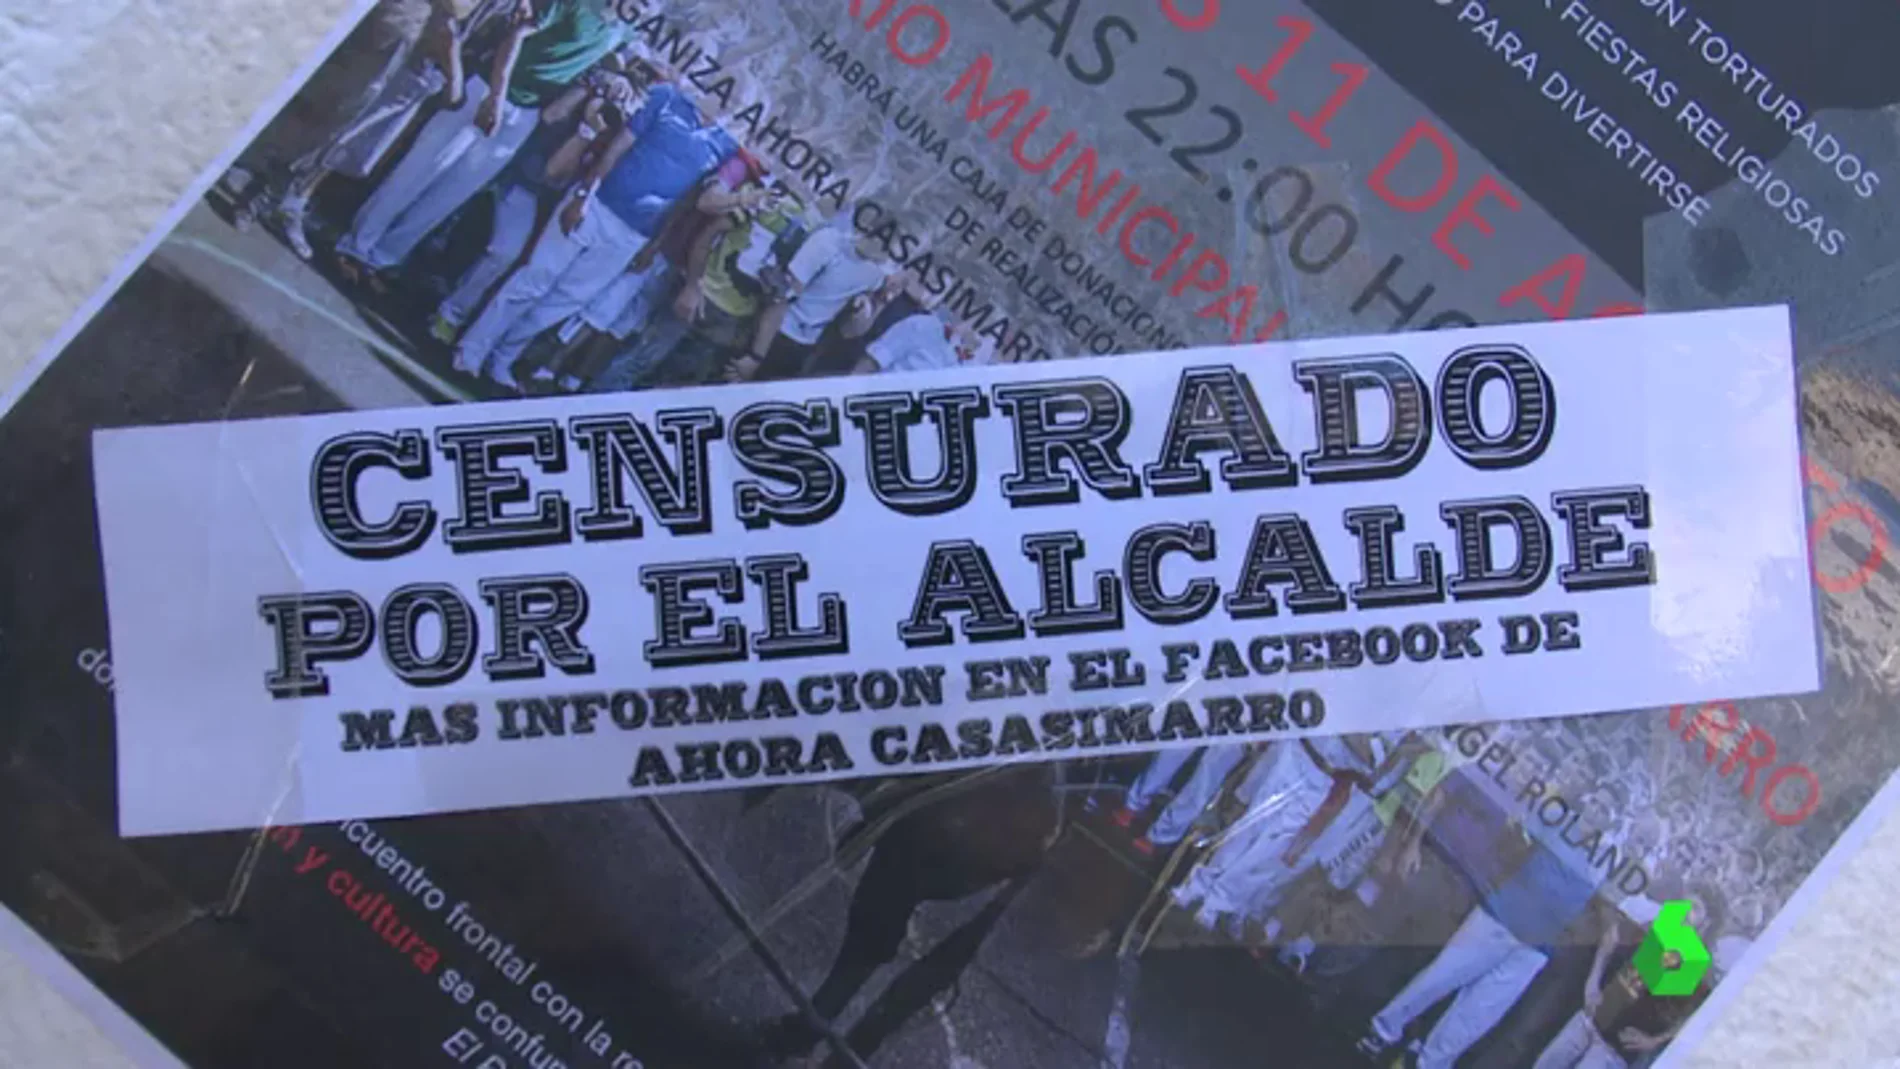 El alcalde de Casasimarro, Cuenca, prohíbe proyectar un documental animalista porque "ataca a la religión católica"